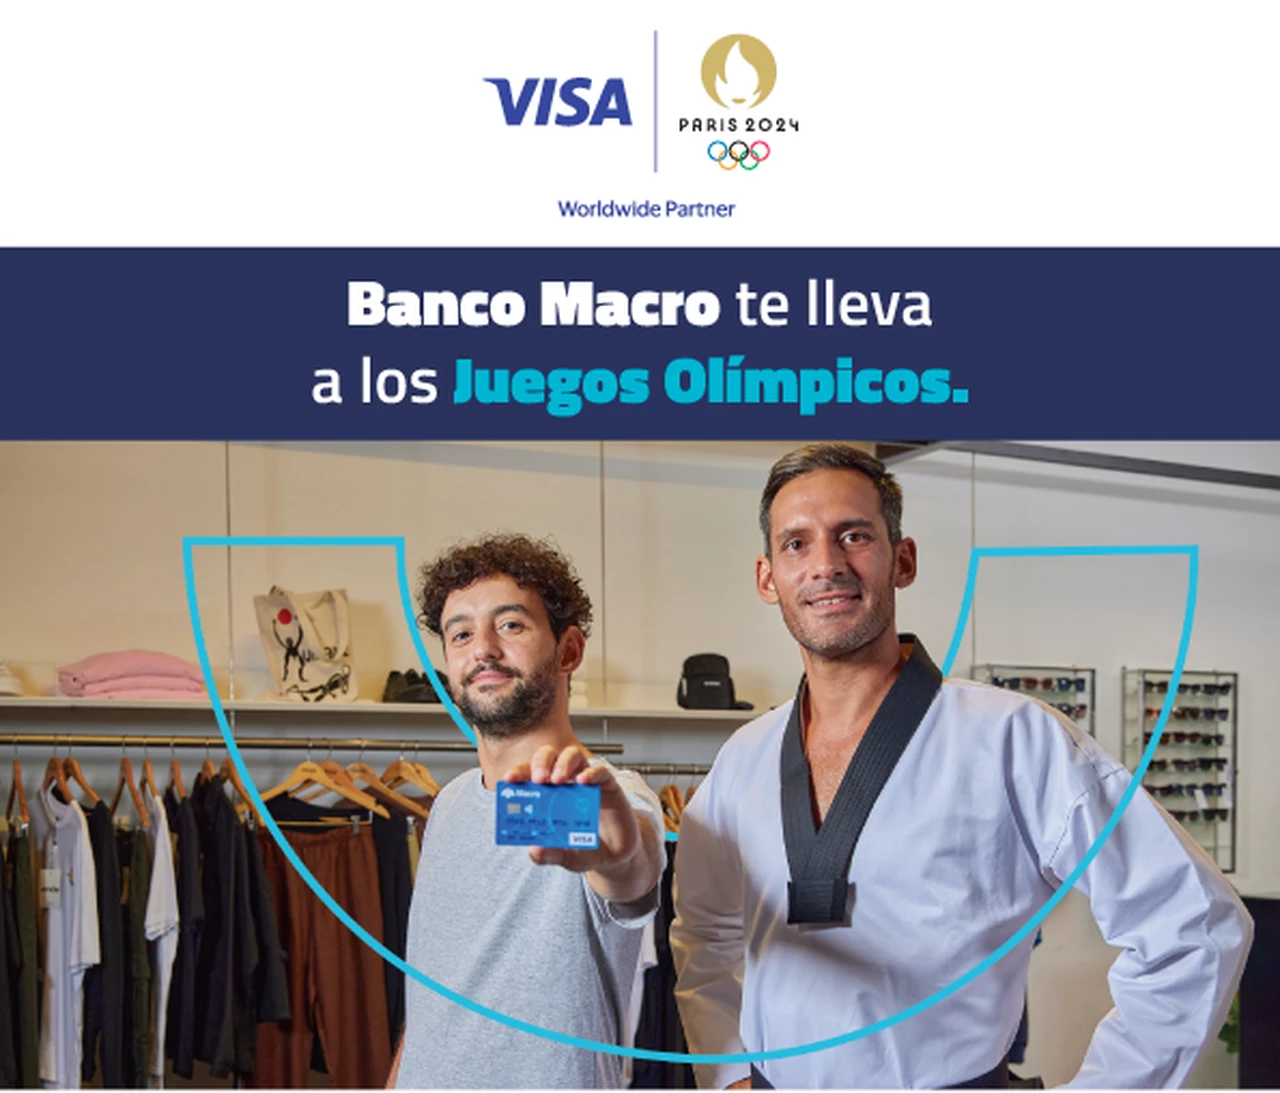 Banco Macro y Visa te llevan a los Juegos Olímpicos de Paris 2024